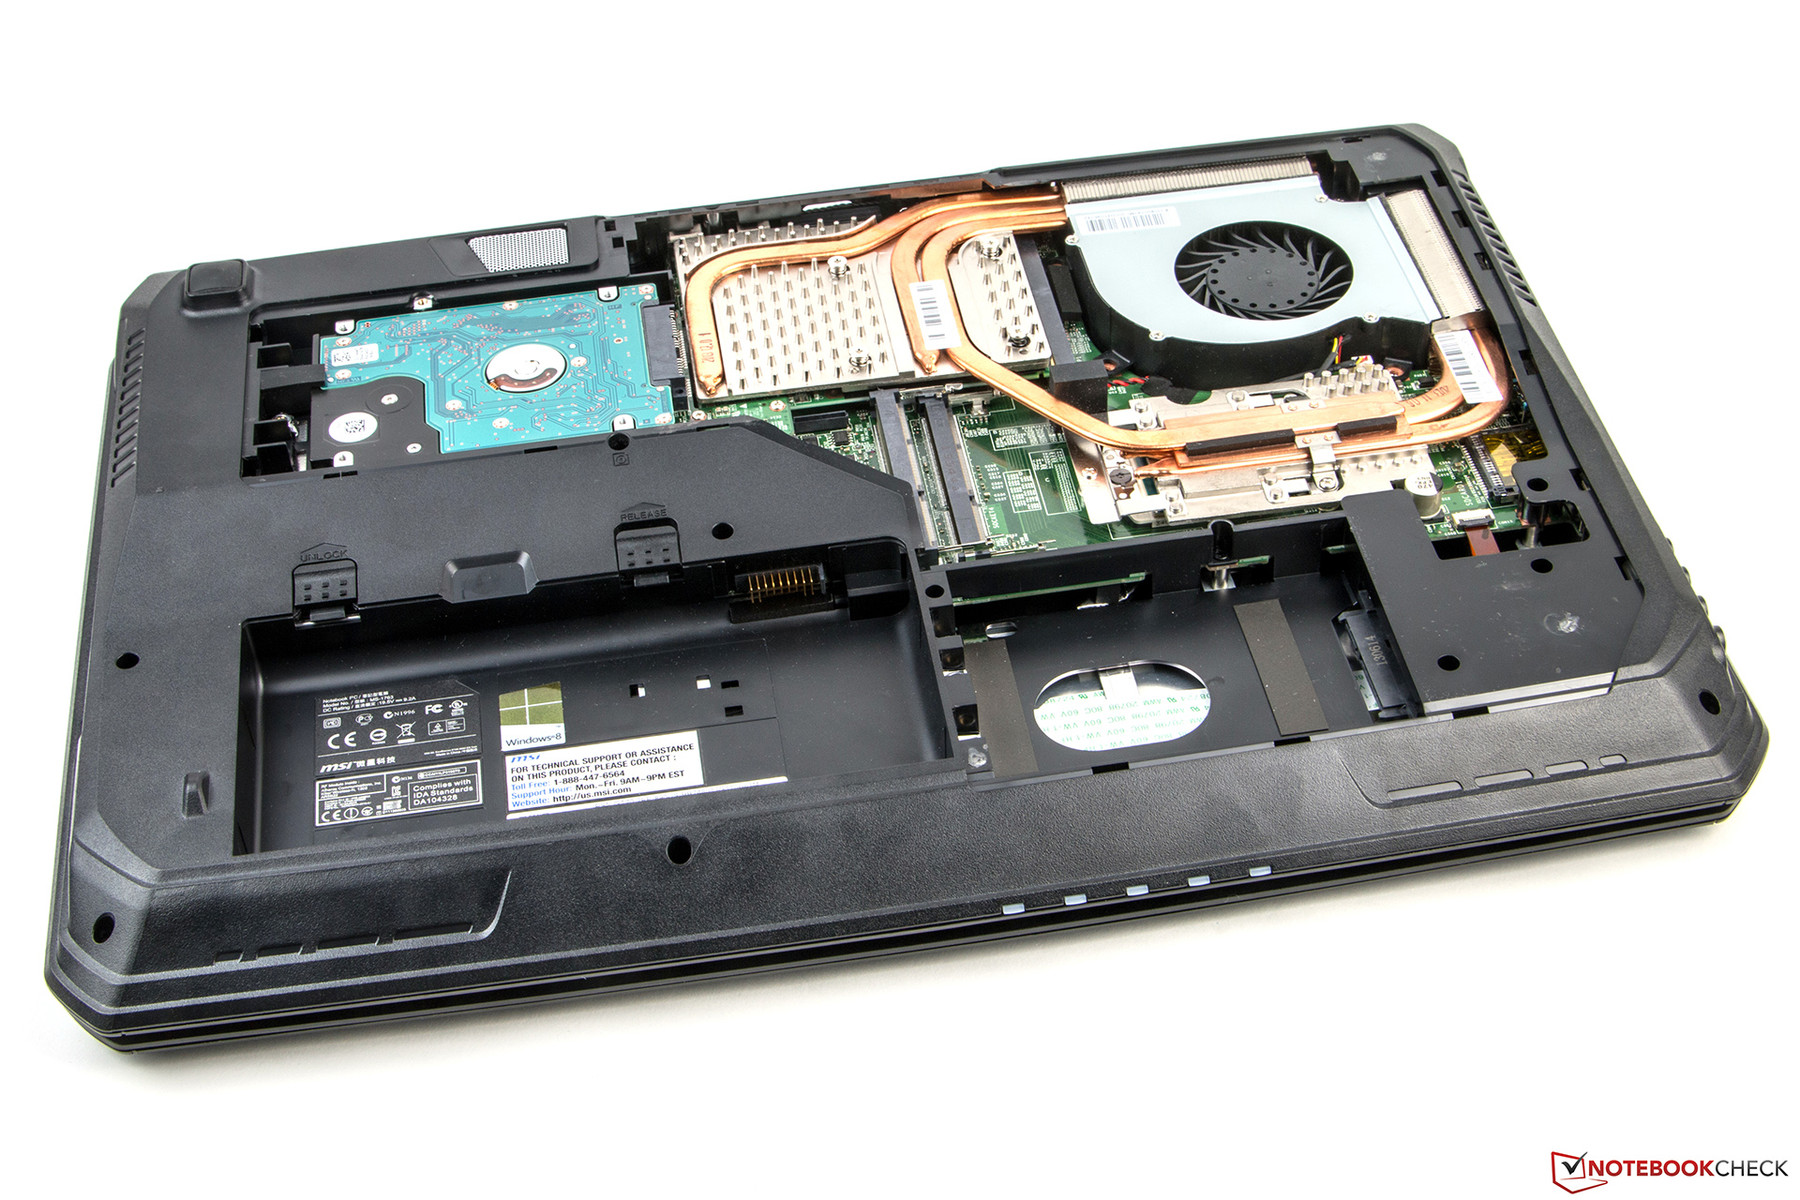 SSD 128GB do laptopa MSI 2PC Dominator - elektroda.pl